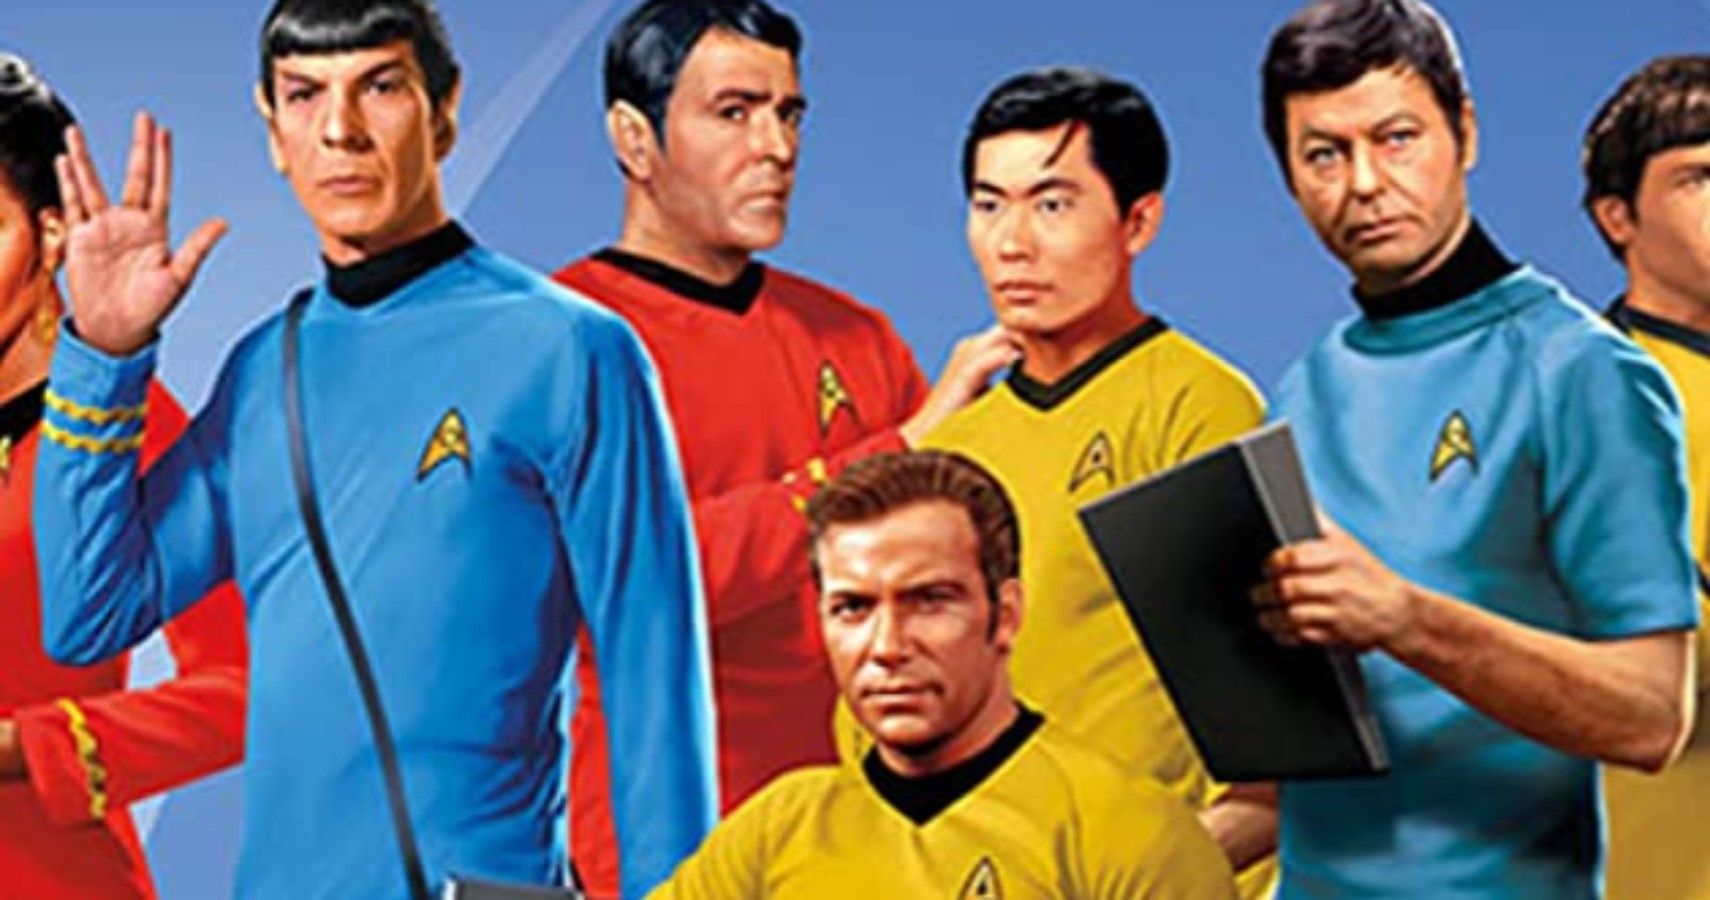 Star Trek Original Series Cast 